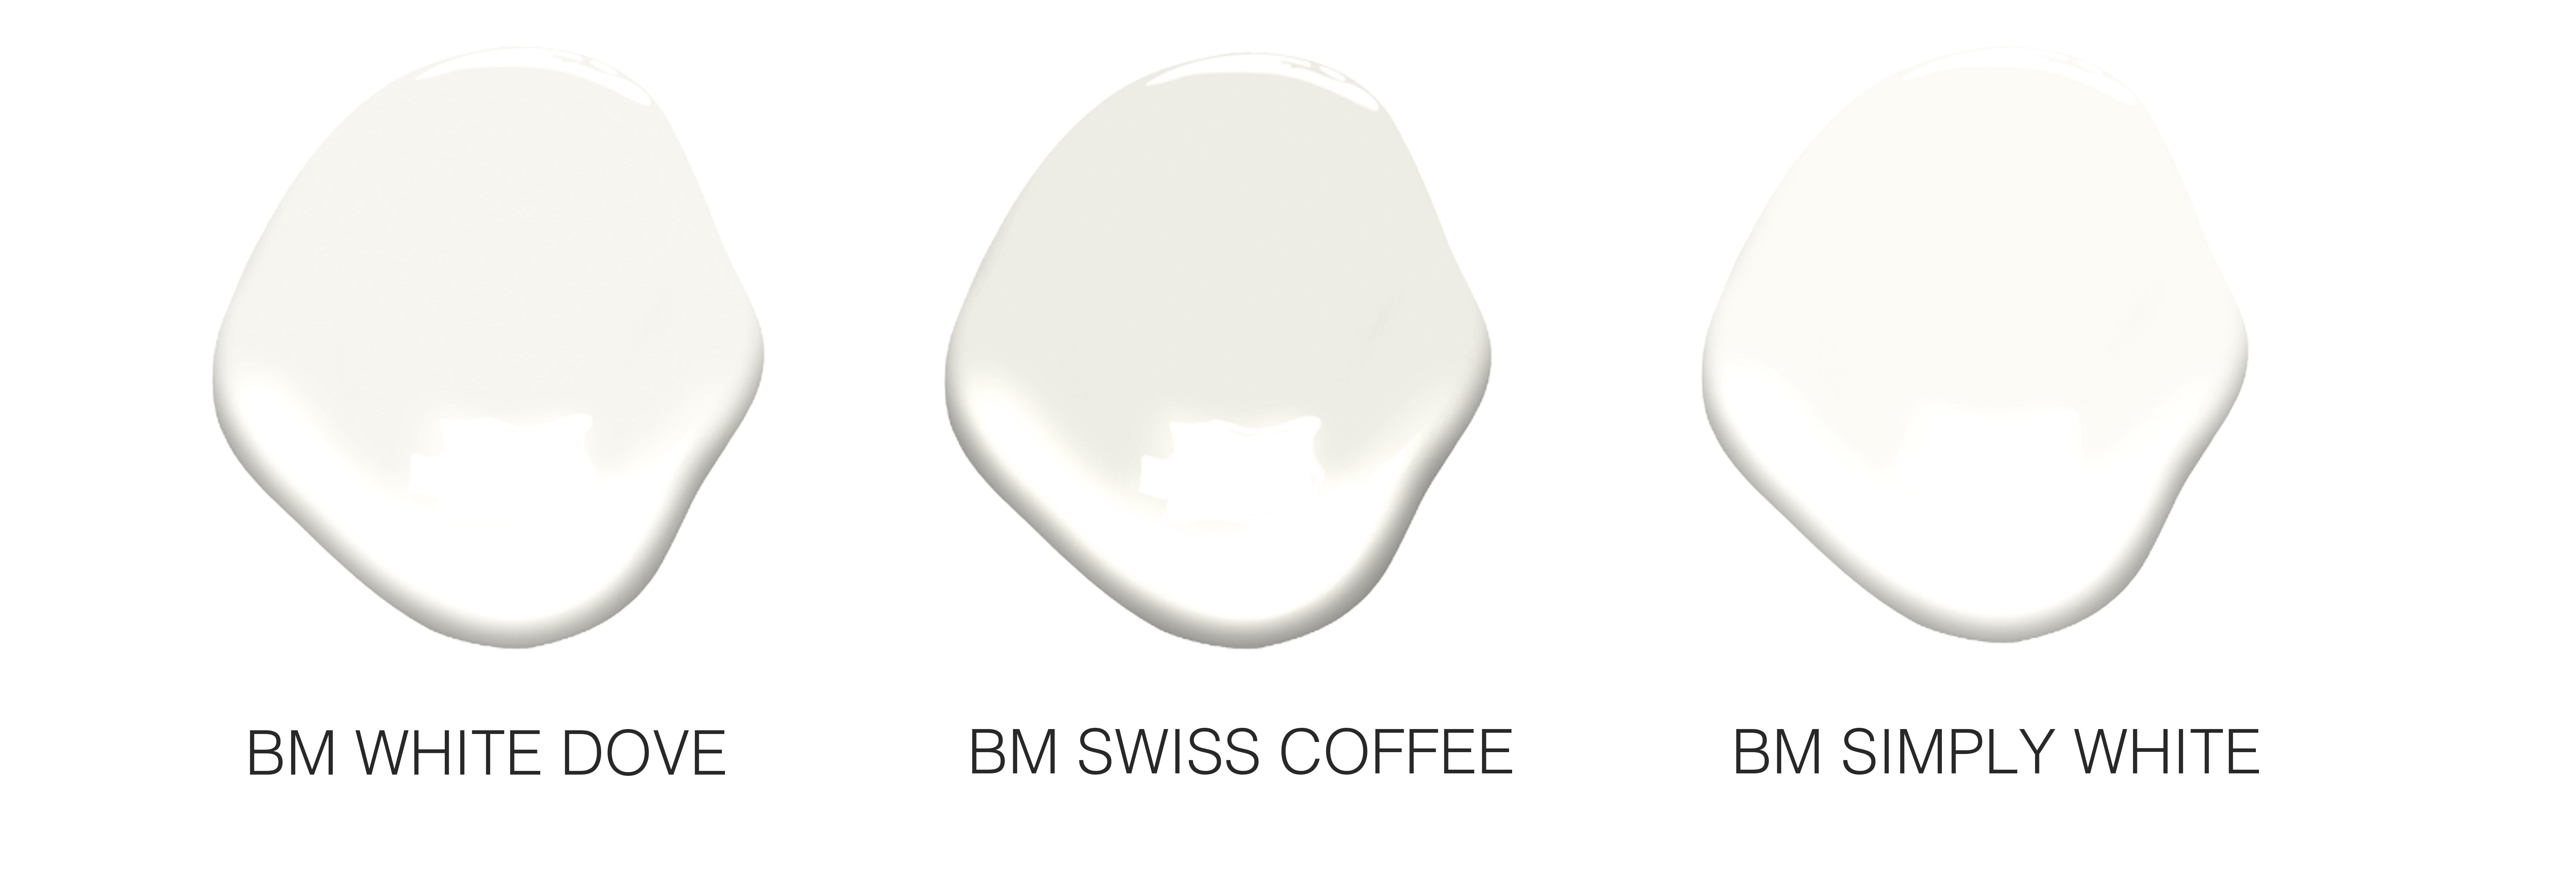 These are white. Dove White цвет. Цвет White dove Swiss Coffee. White dove and super White. Что за цвет краски белый камень.